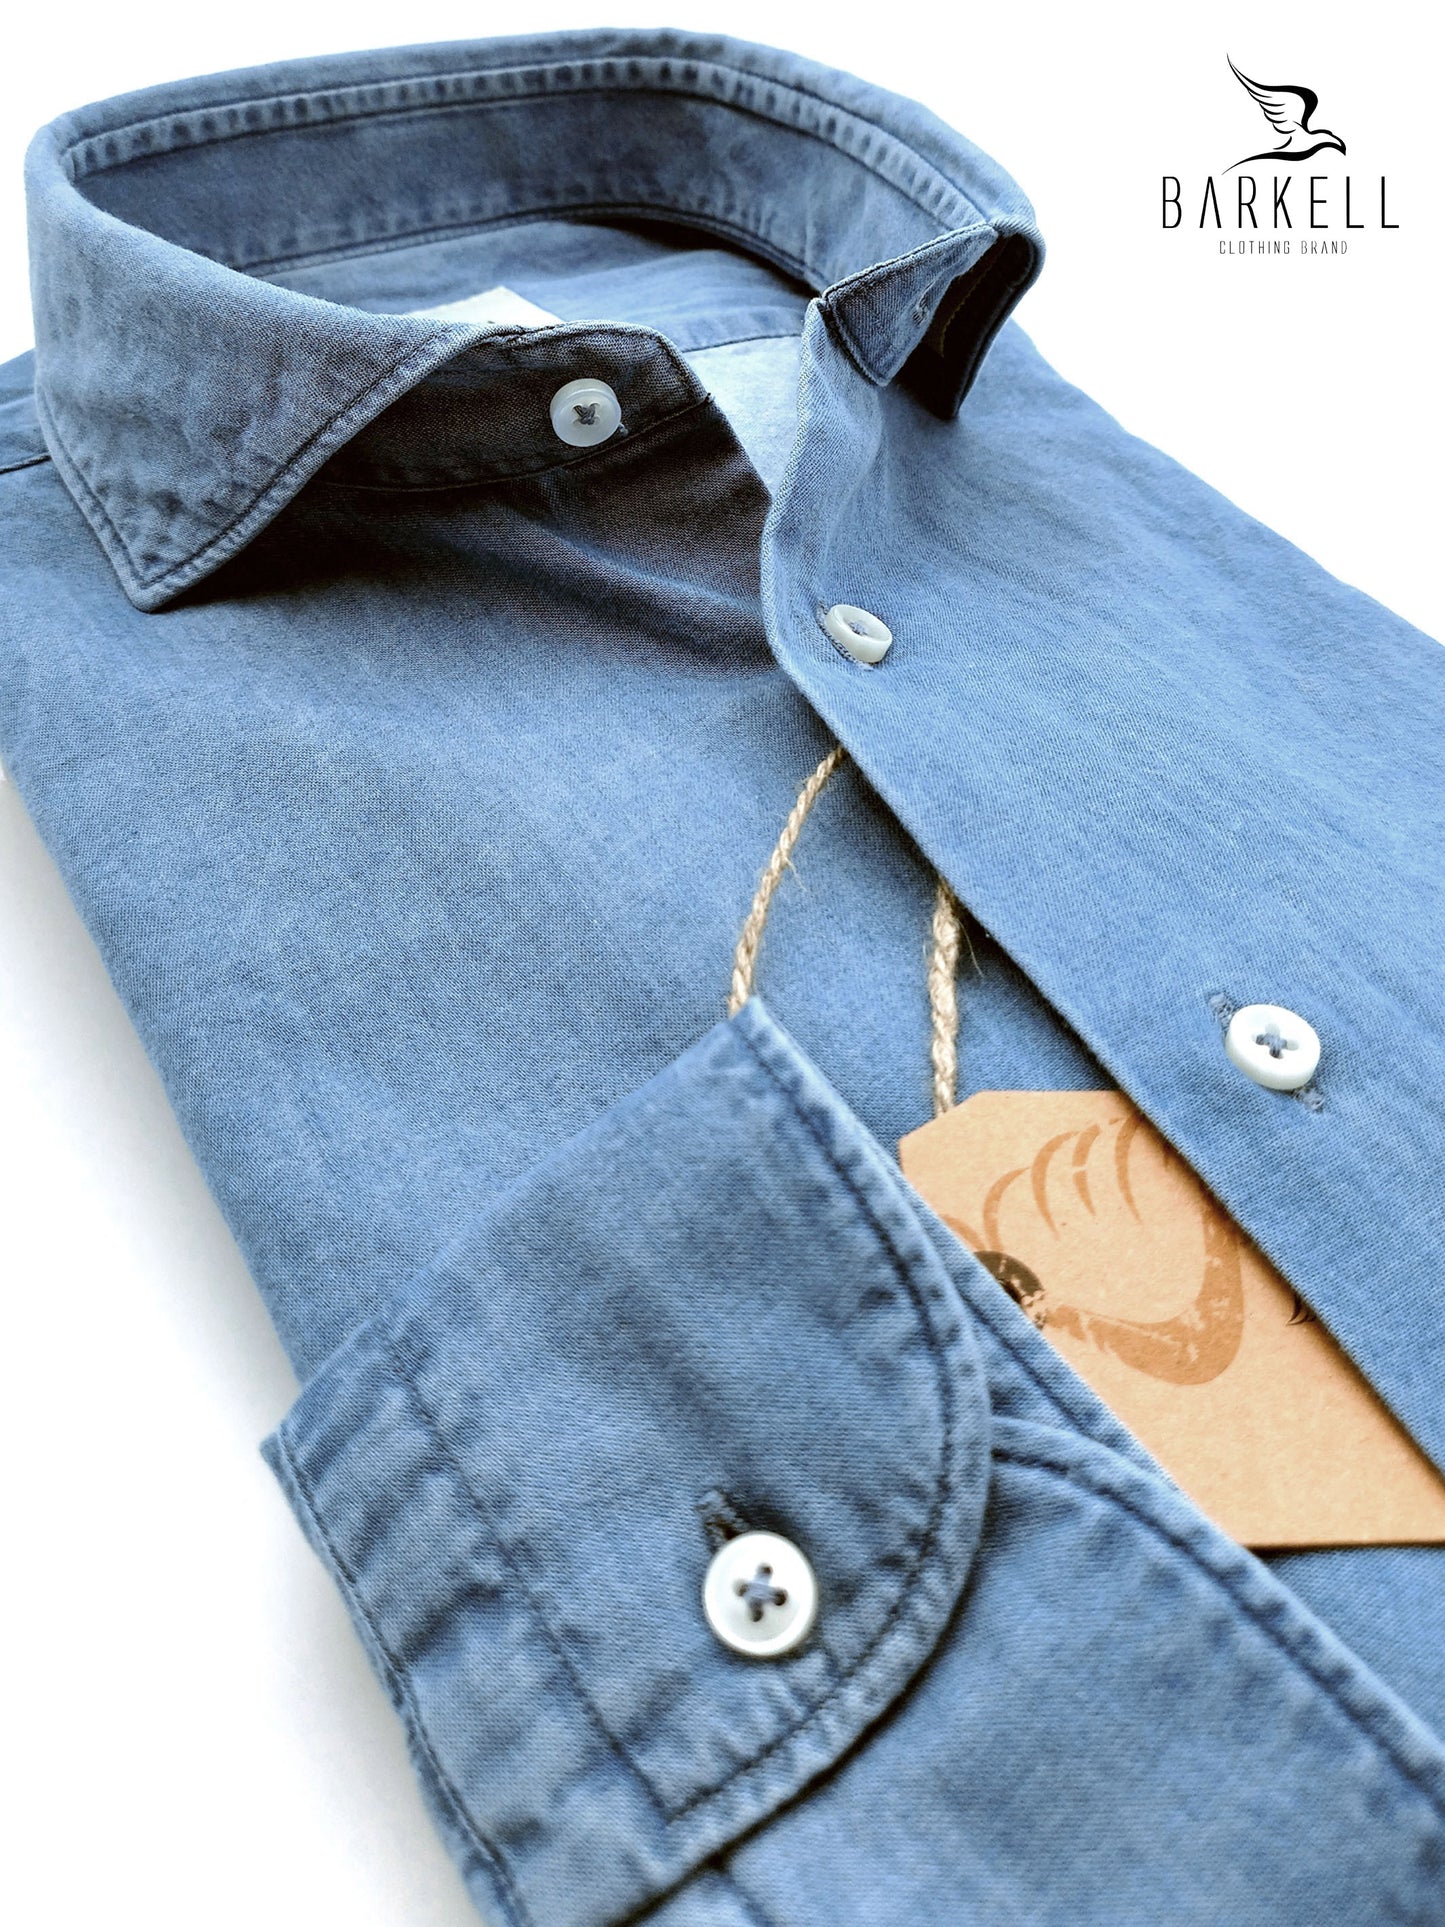 Camicia in Cotone Denim Lavato Color Jeans Chiaro Collo Francese Cutaway (Le taglie esaurite saranno a breve nuovamente disponibili)